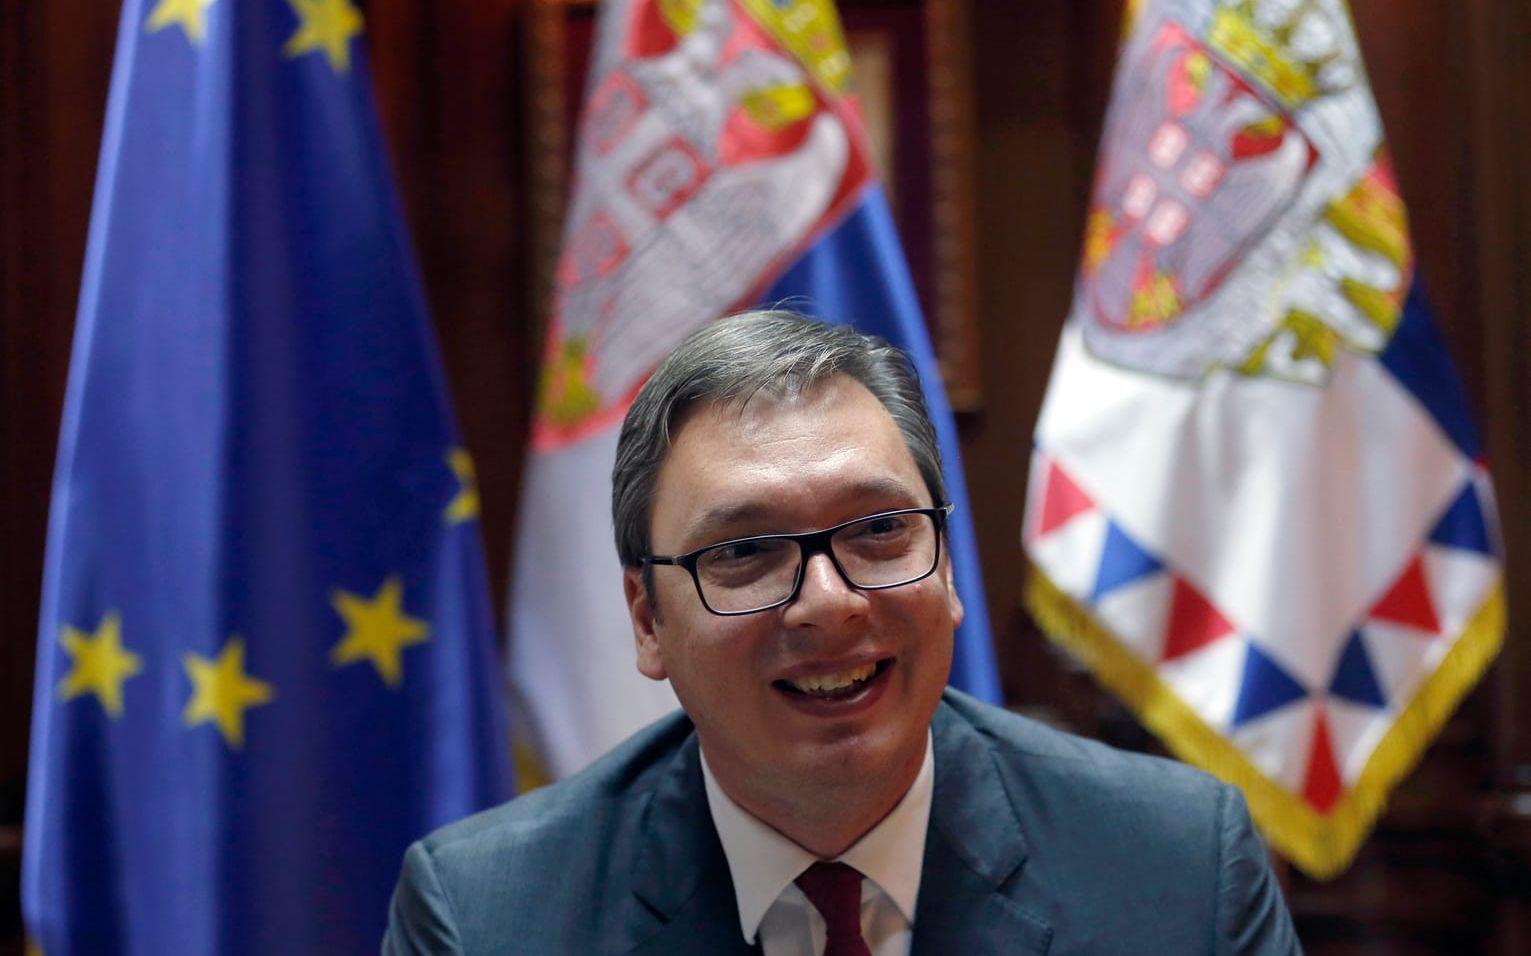 Serbiens president Aleksandar Vucic sa i samband men den presskonferens "Vi vet var vi är på väg", vilket tolkades som att han menade EU.